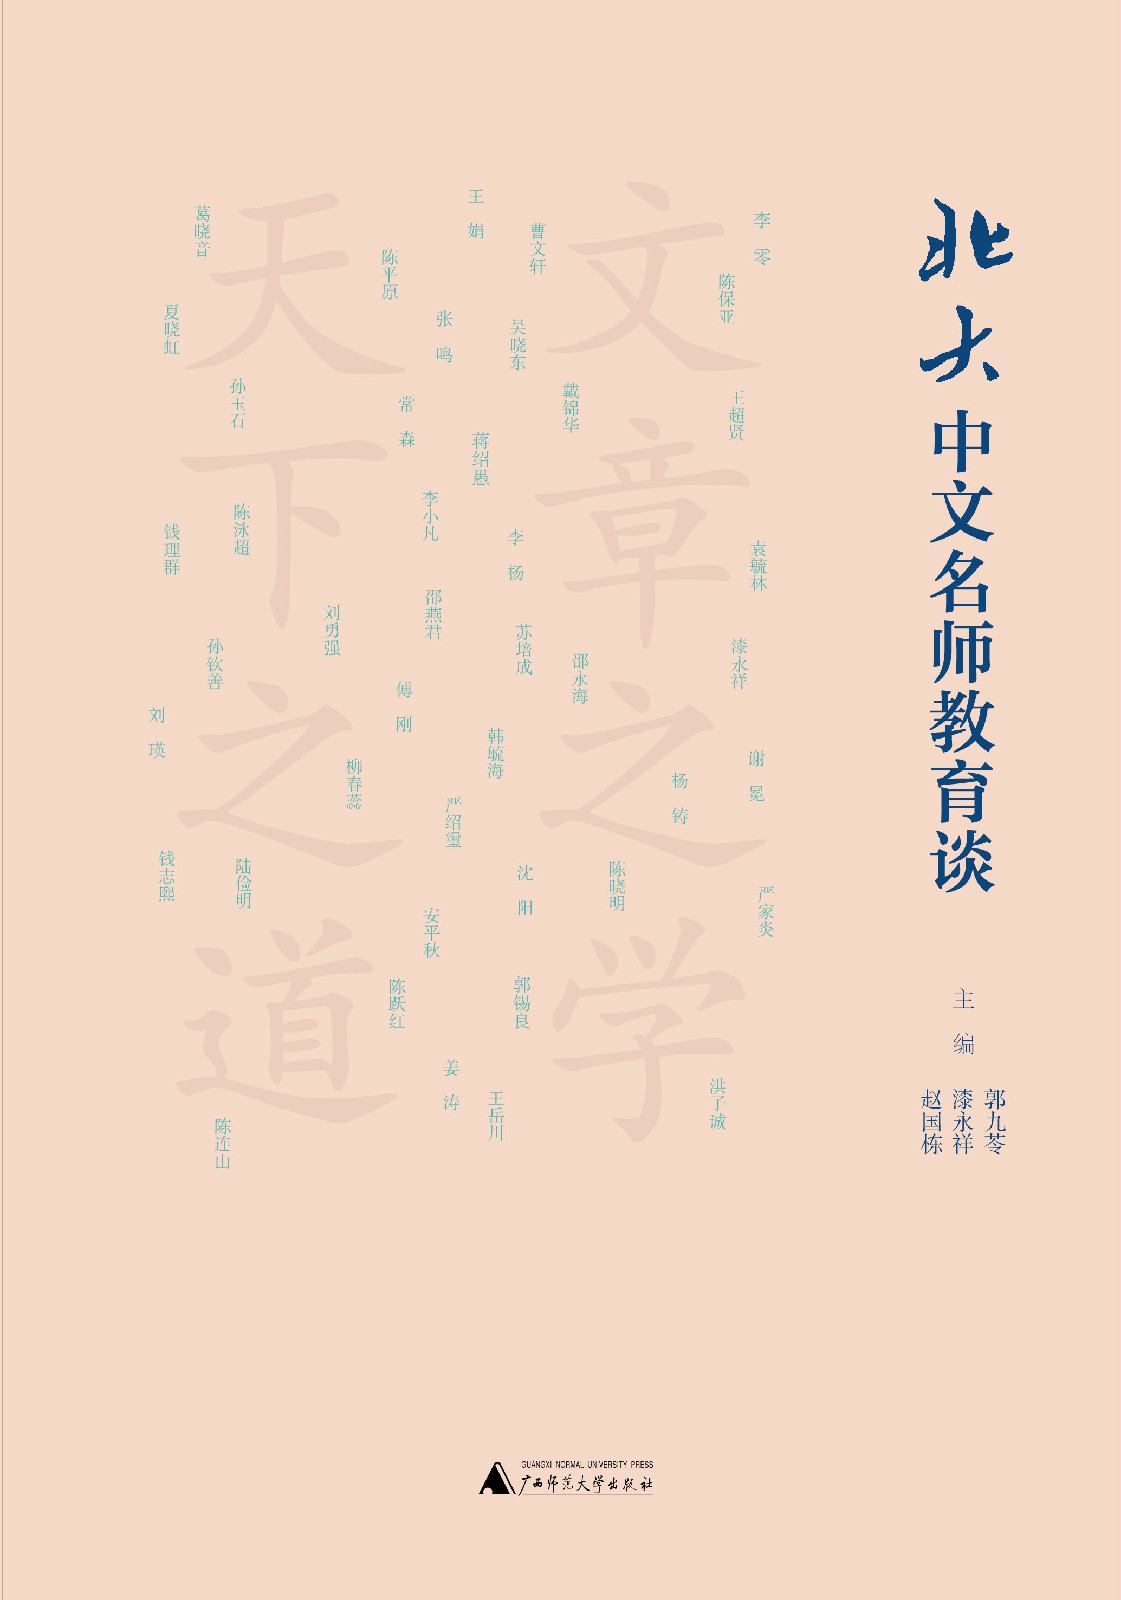 《北大中文名師教育談》平面圖